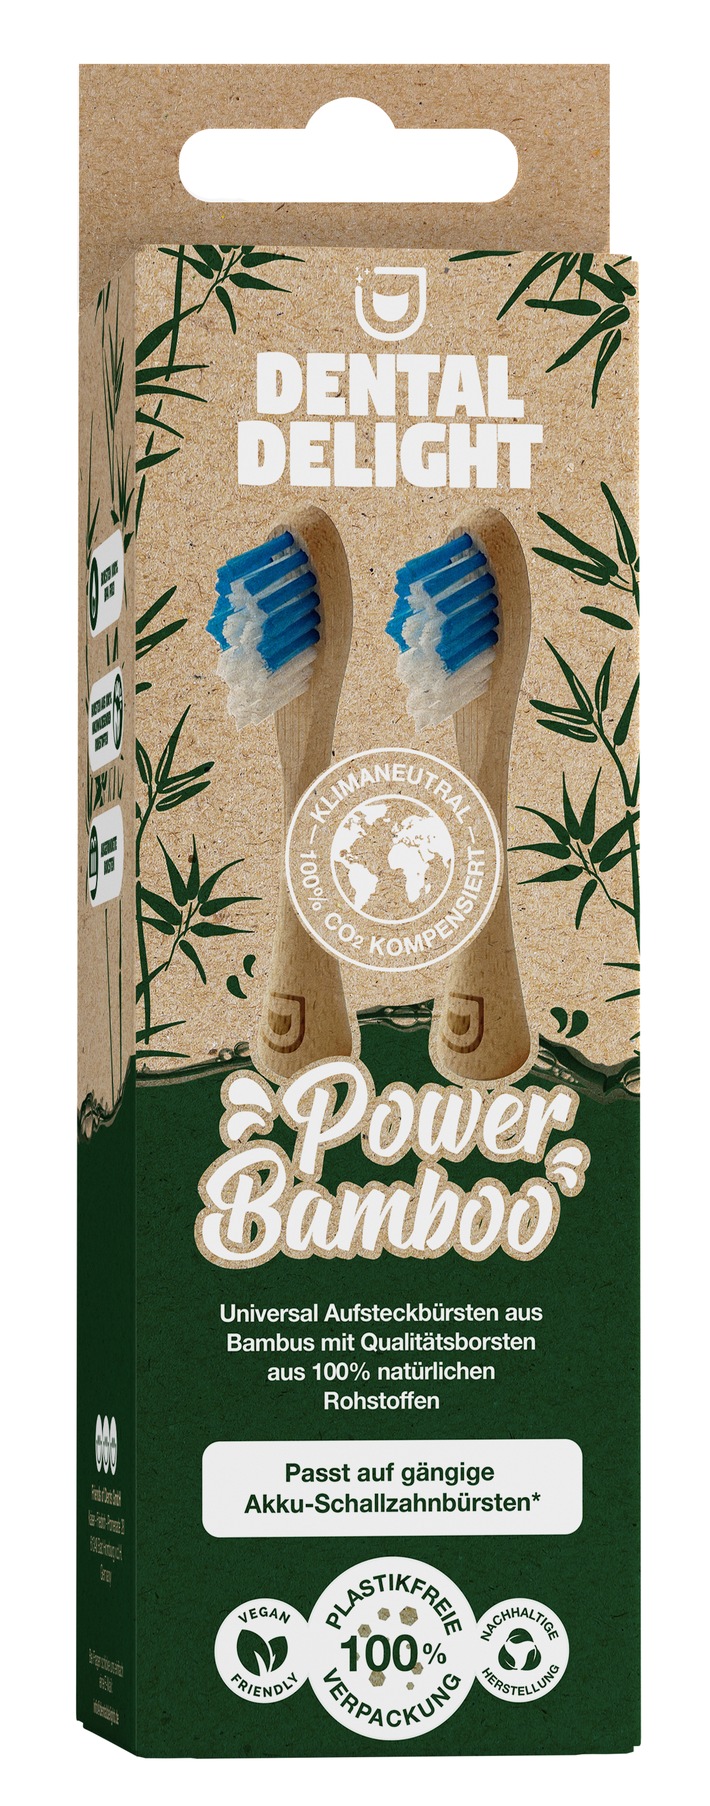 Nachhaltigkeit ist in aller Munde... Dank Dental Delight Power Bamboo jetzt auch bei Nutzern elektrischer Schallzahnbürsten!